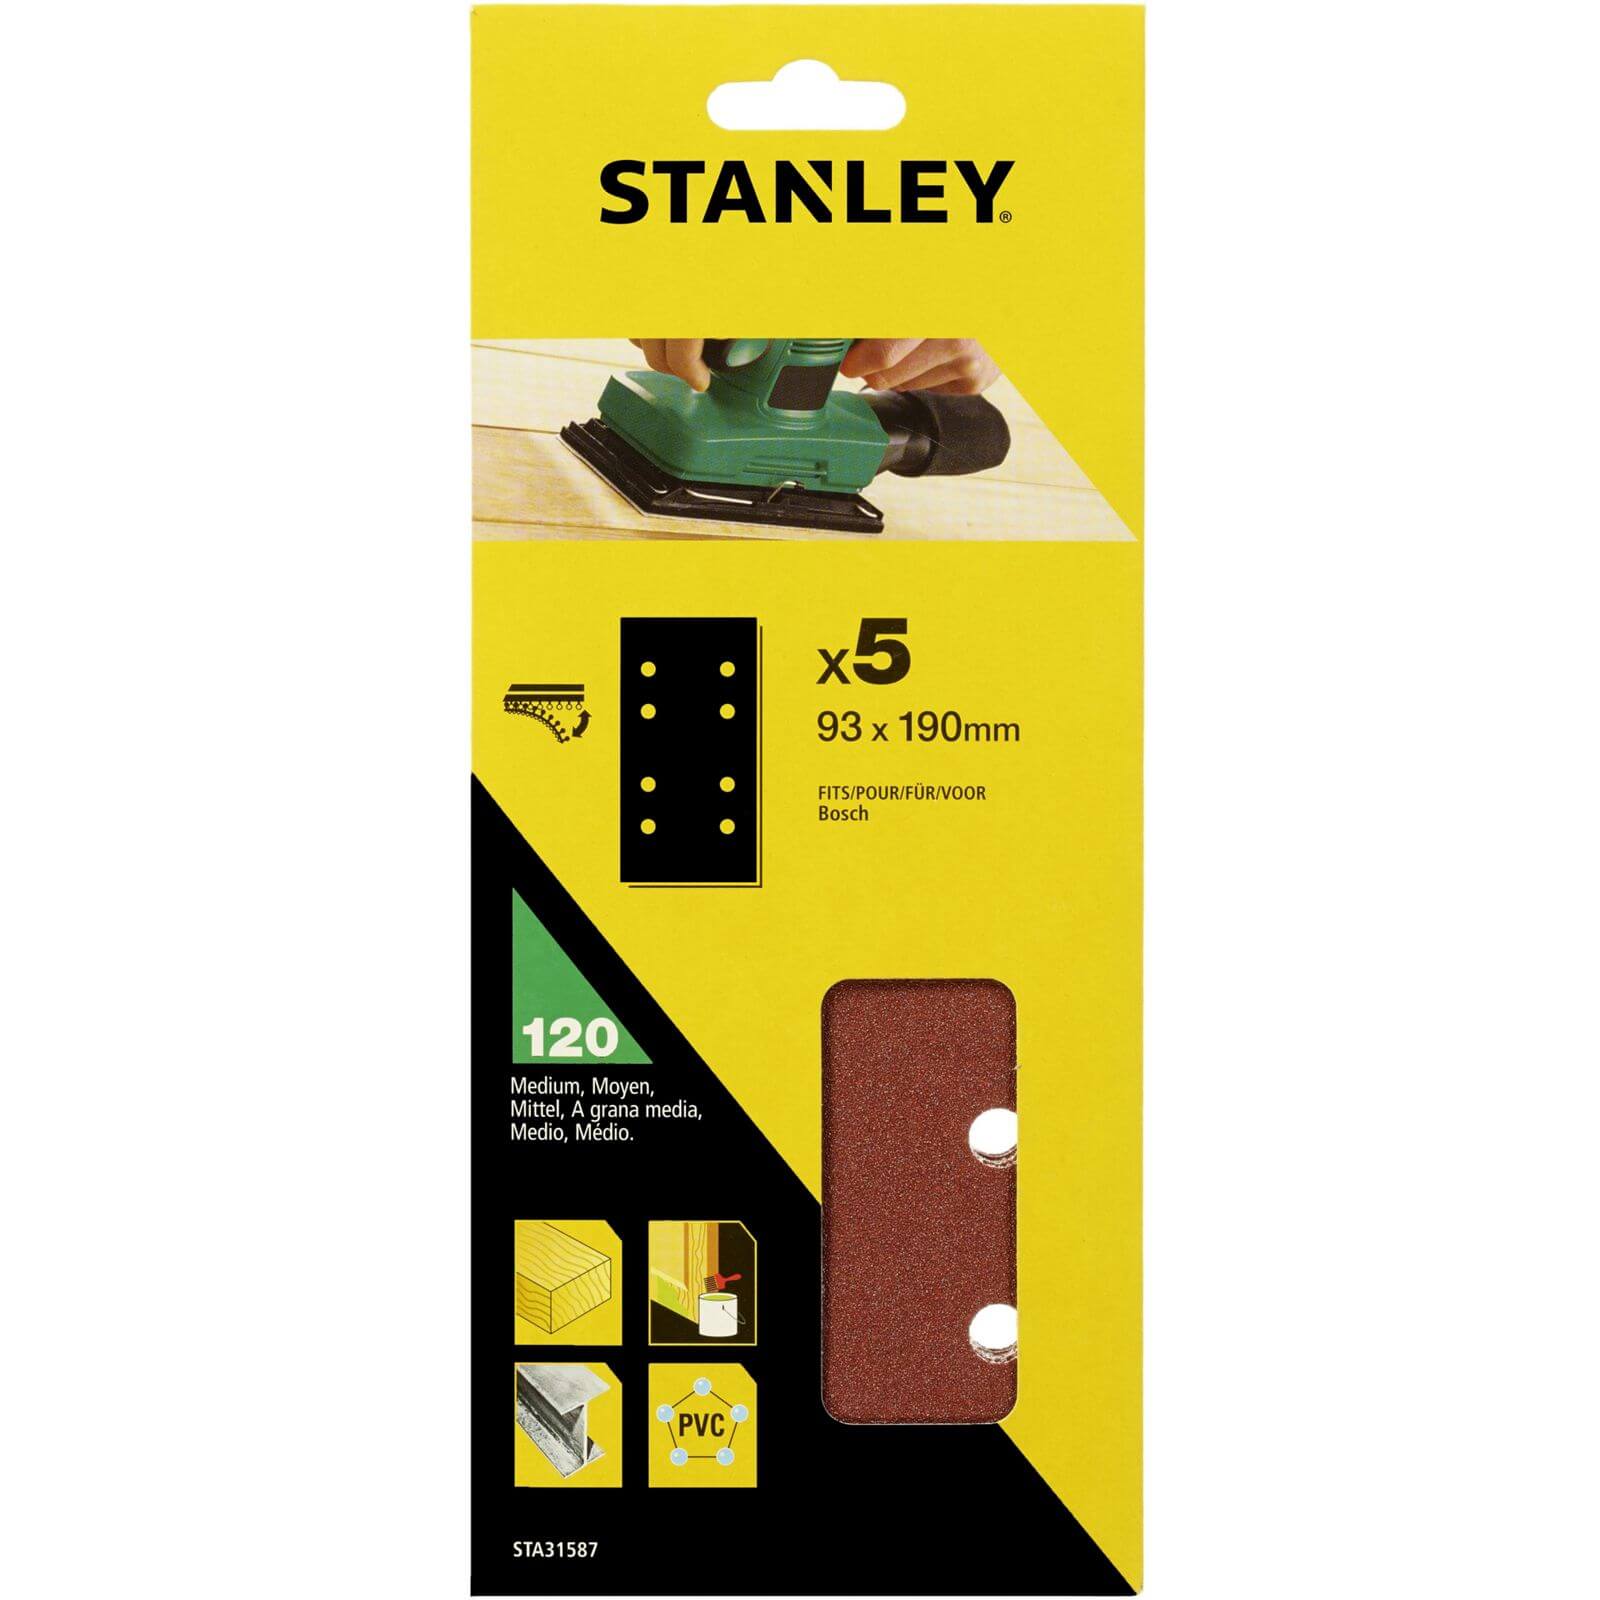 Photo of Stanley 1/3 Sheet Sander 120g Hook & Loop Sanding Sheets - Sta31587-xj